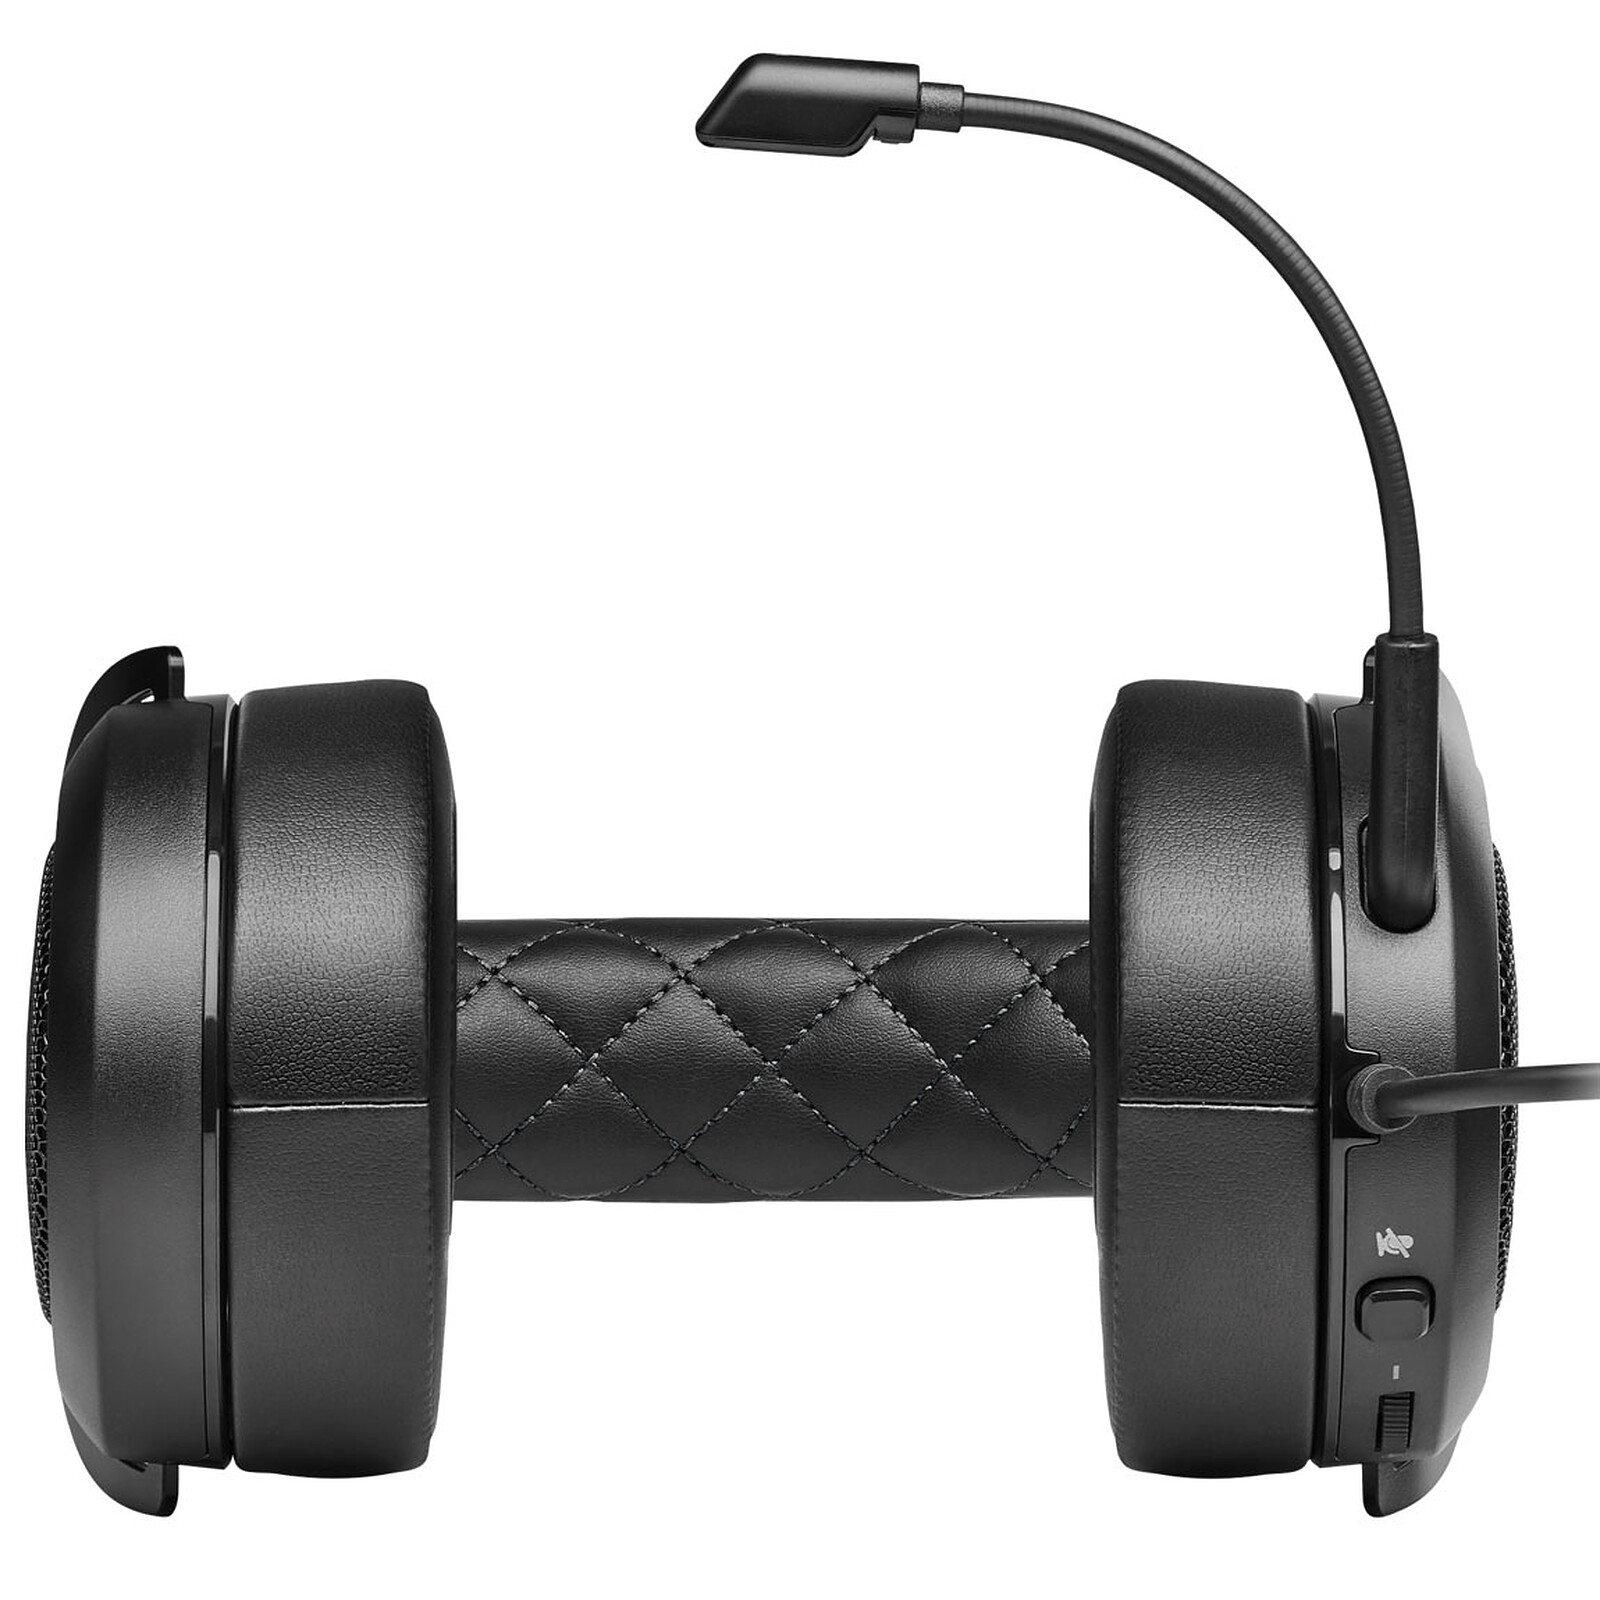 Corsair HS65 Wireless v2 (Noir) - Micro-casque - Garantie 3 ans LDLC